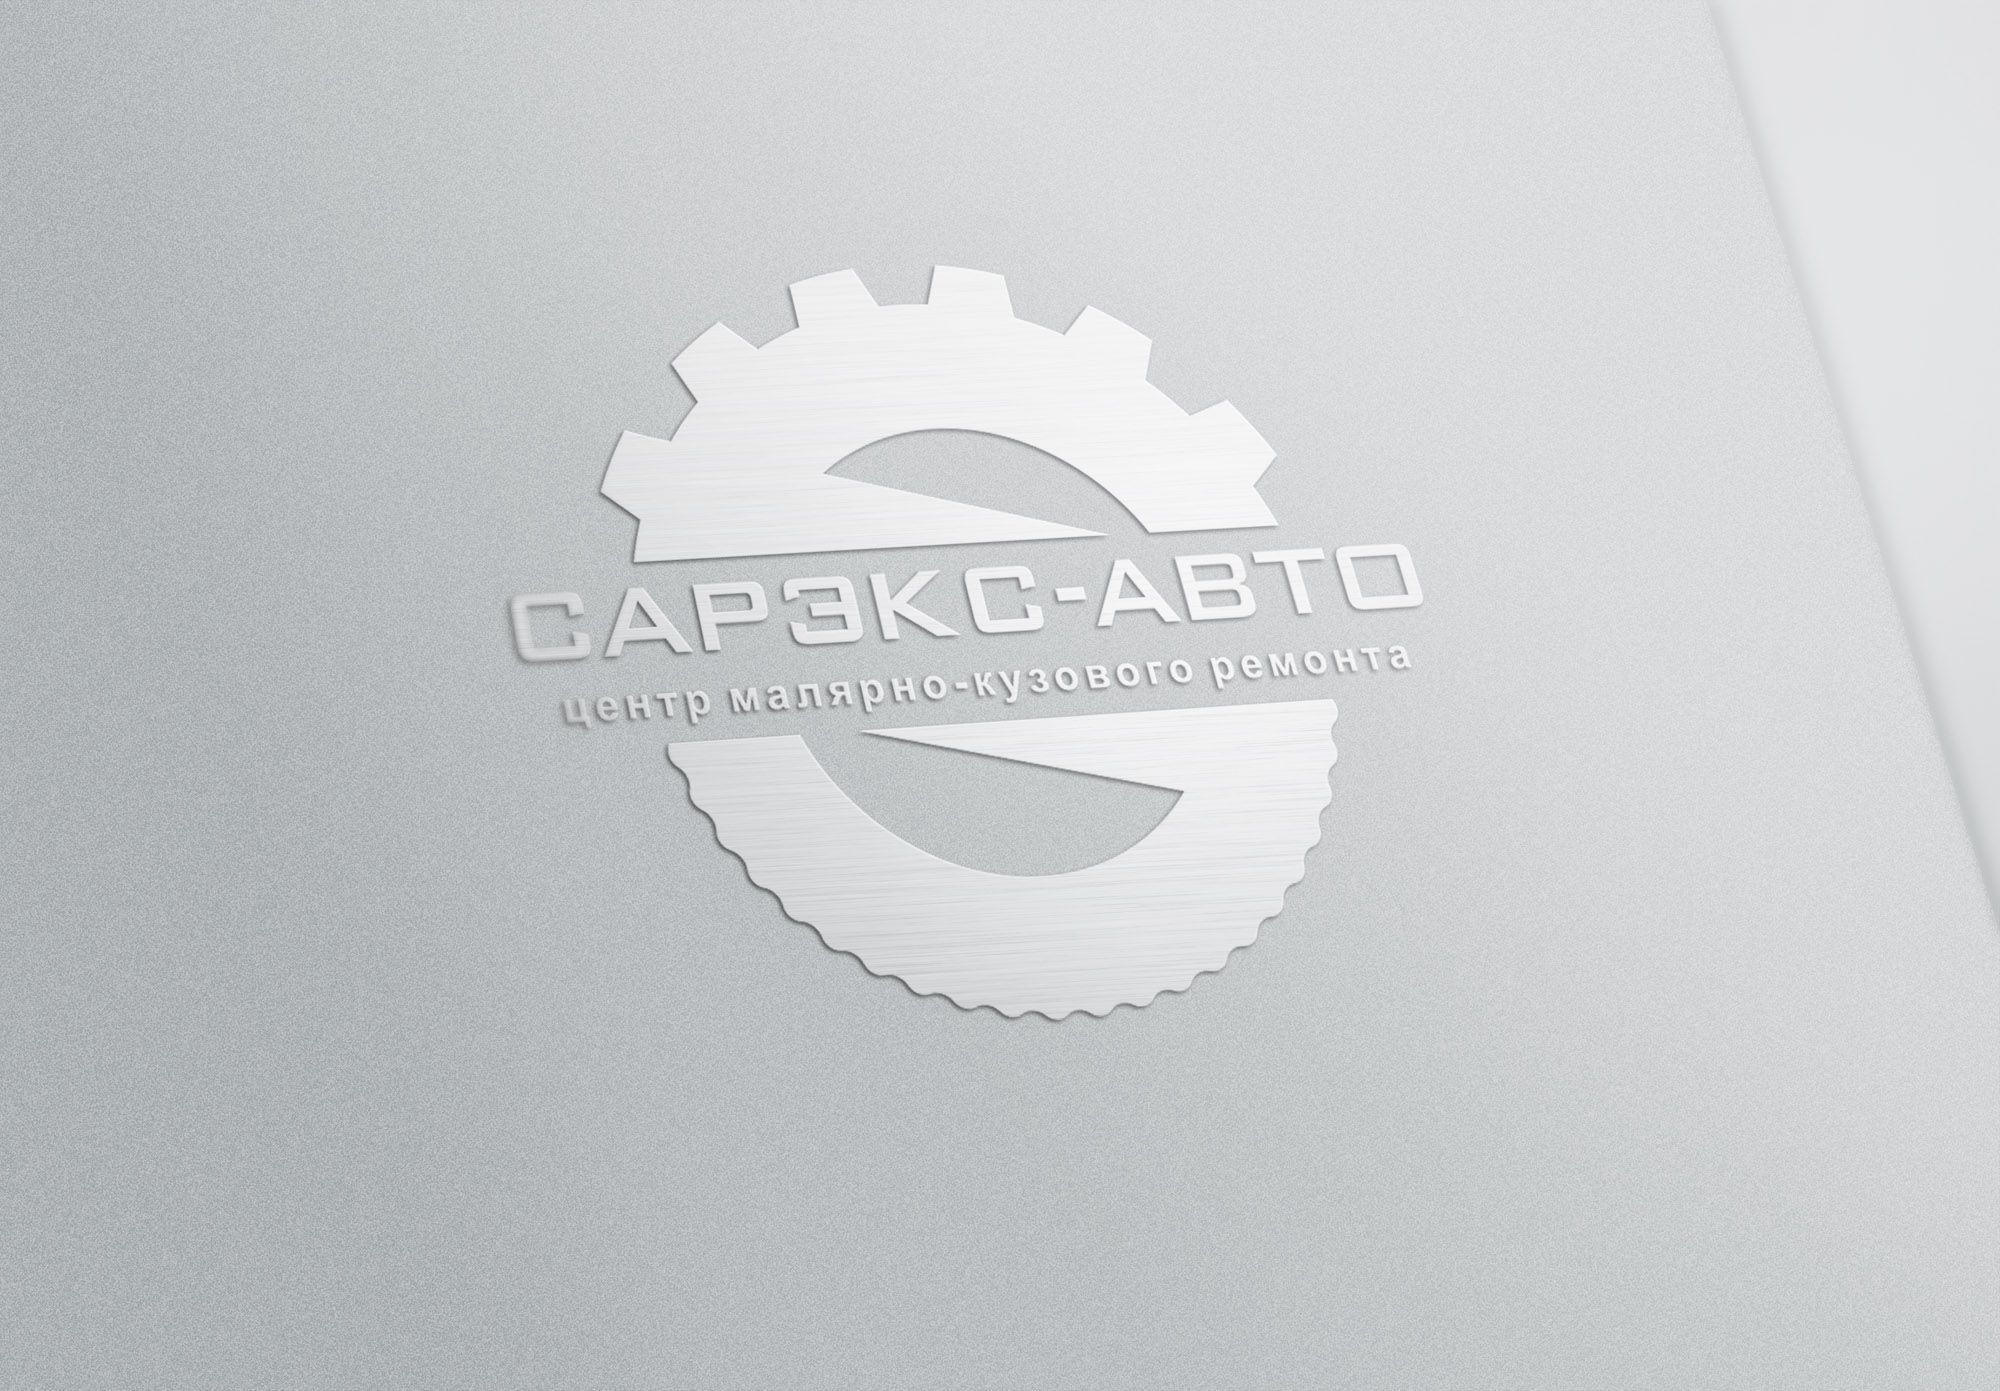 Лого и фирменный стиль для СарЭкс-Авто  - дизайнер trojni